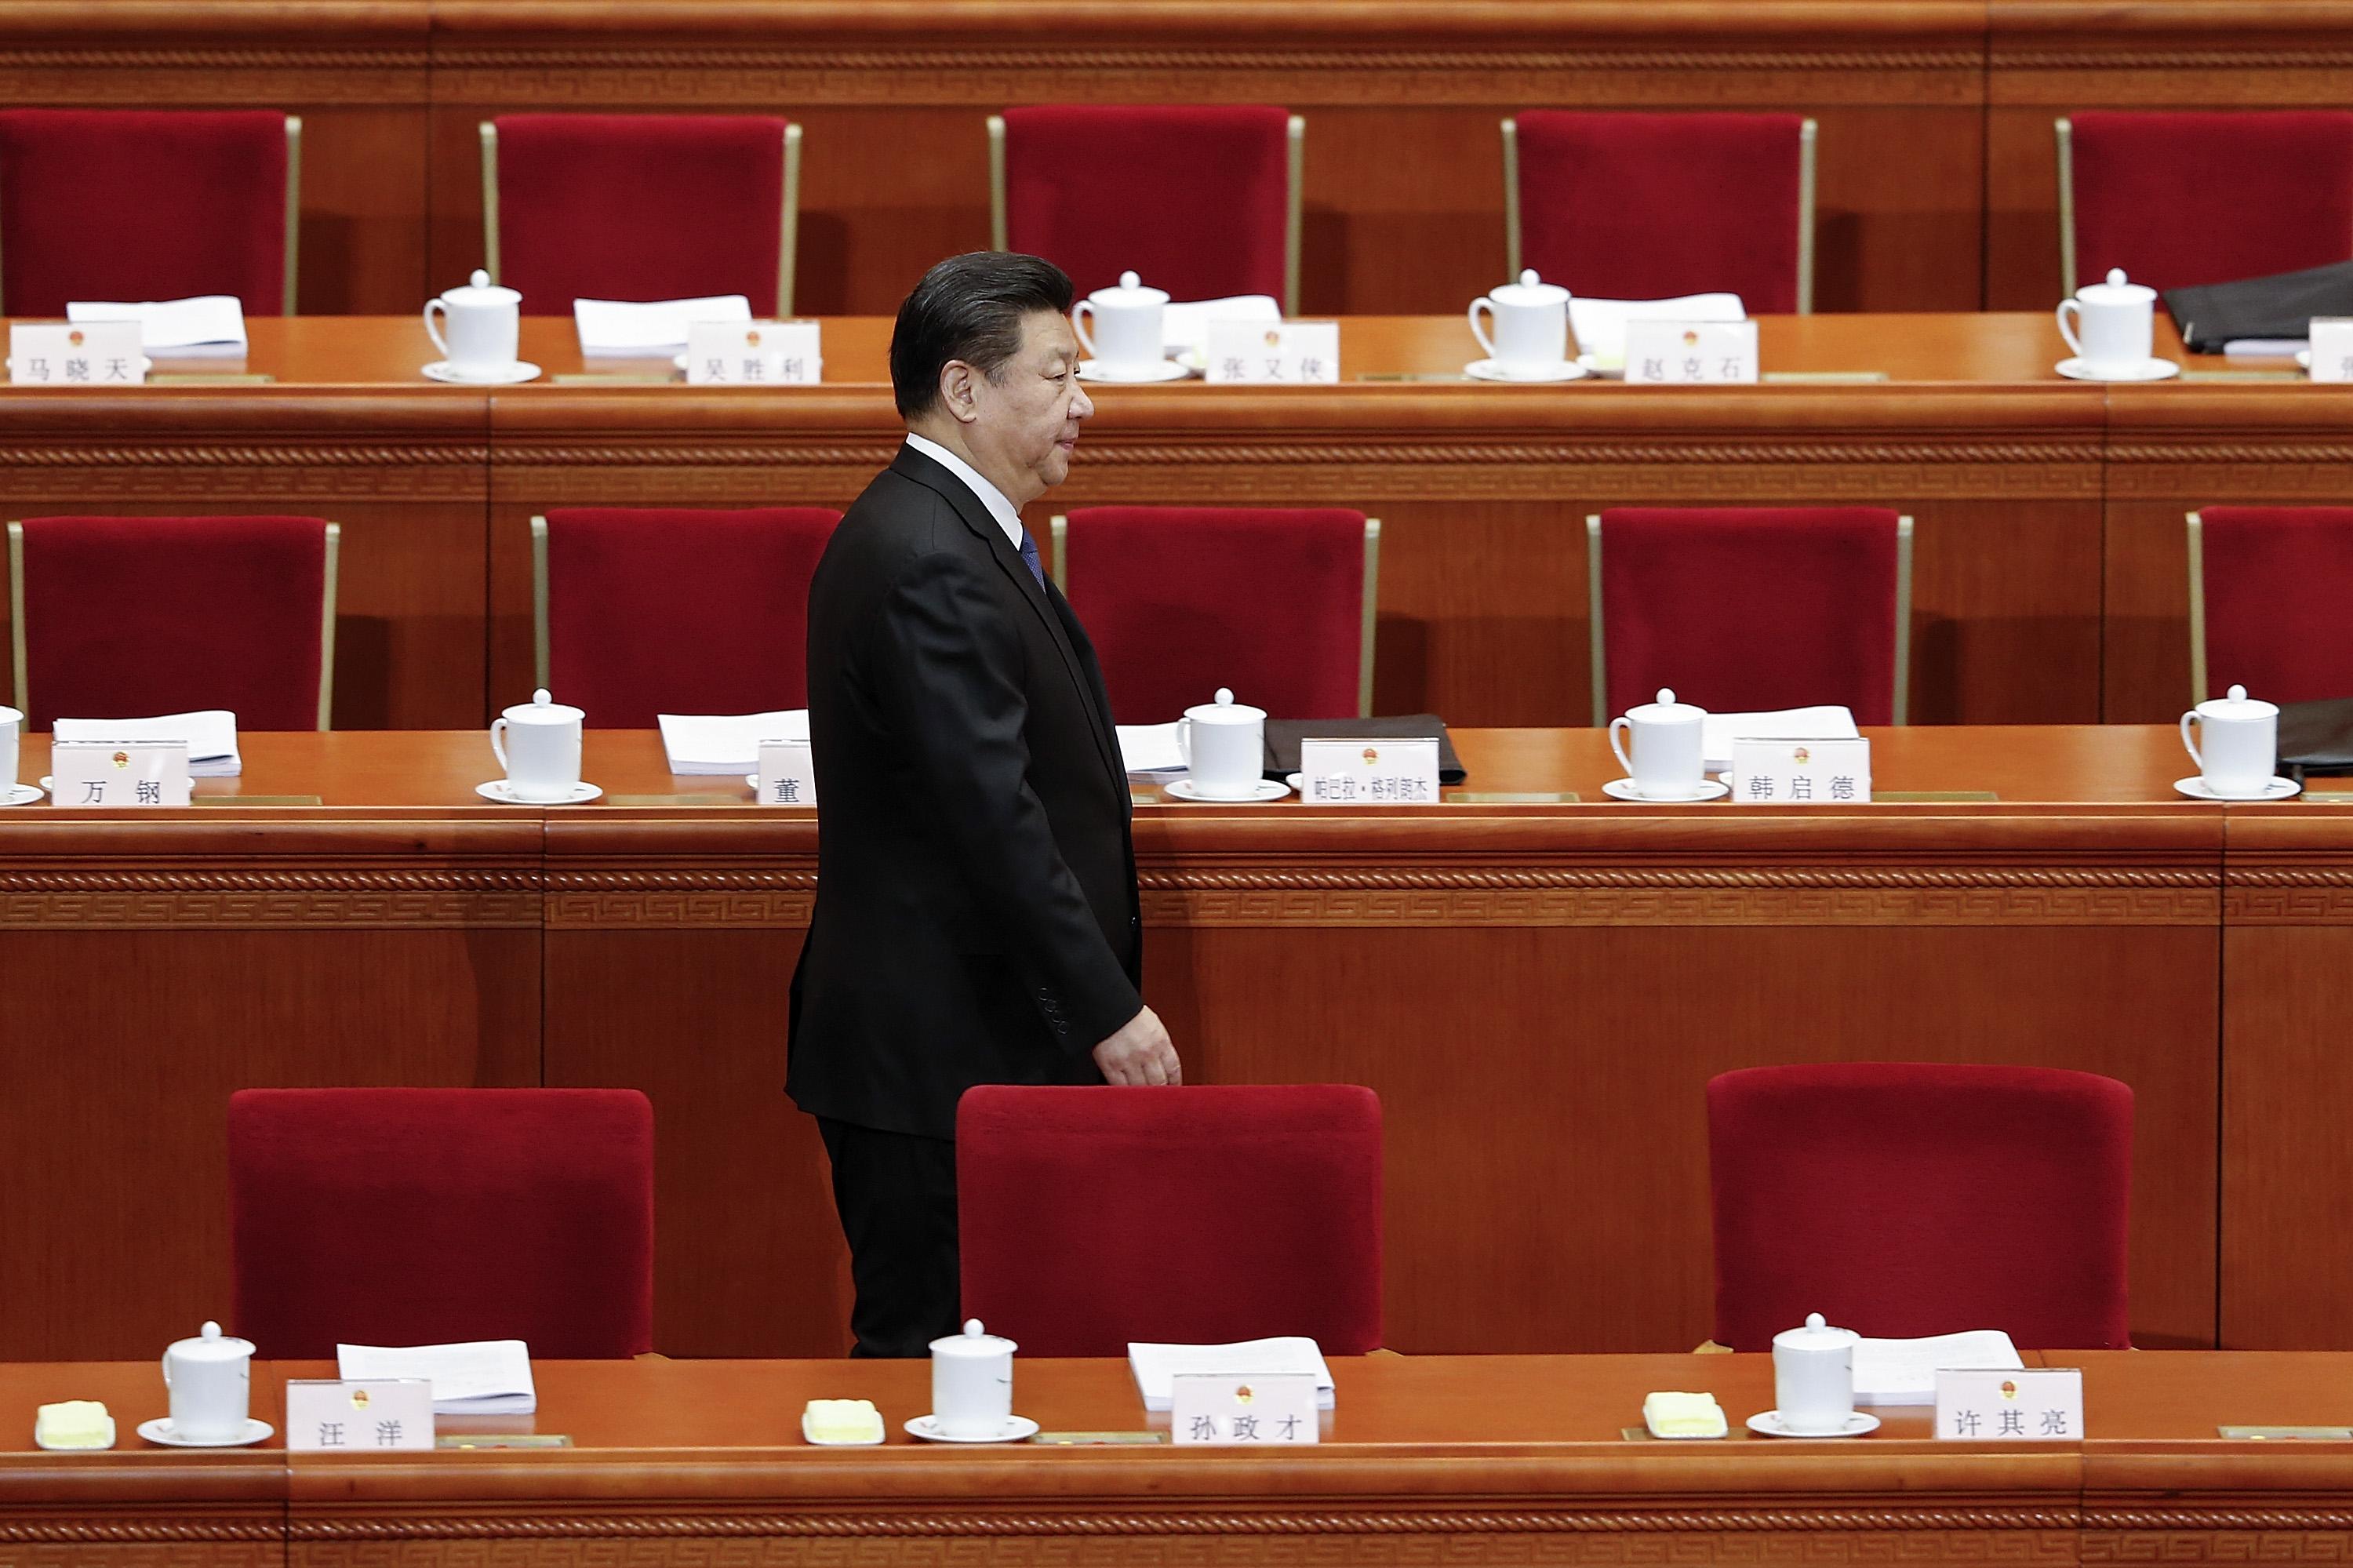 2016 var året då Xi Jinping lät utse sig till "kärnledare". Nu har han större makt än någonsin, men vad vill han göra med den? Kanske nästa år ger svaren. (Foto: Lintao Zhang/Getty Images)